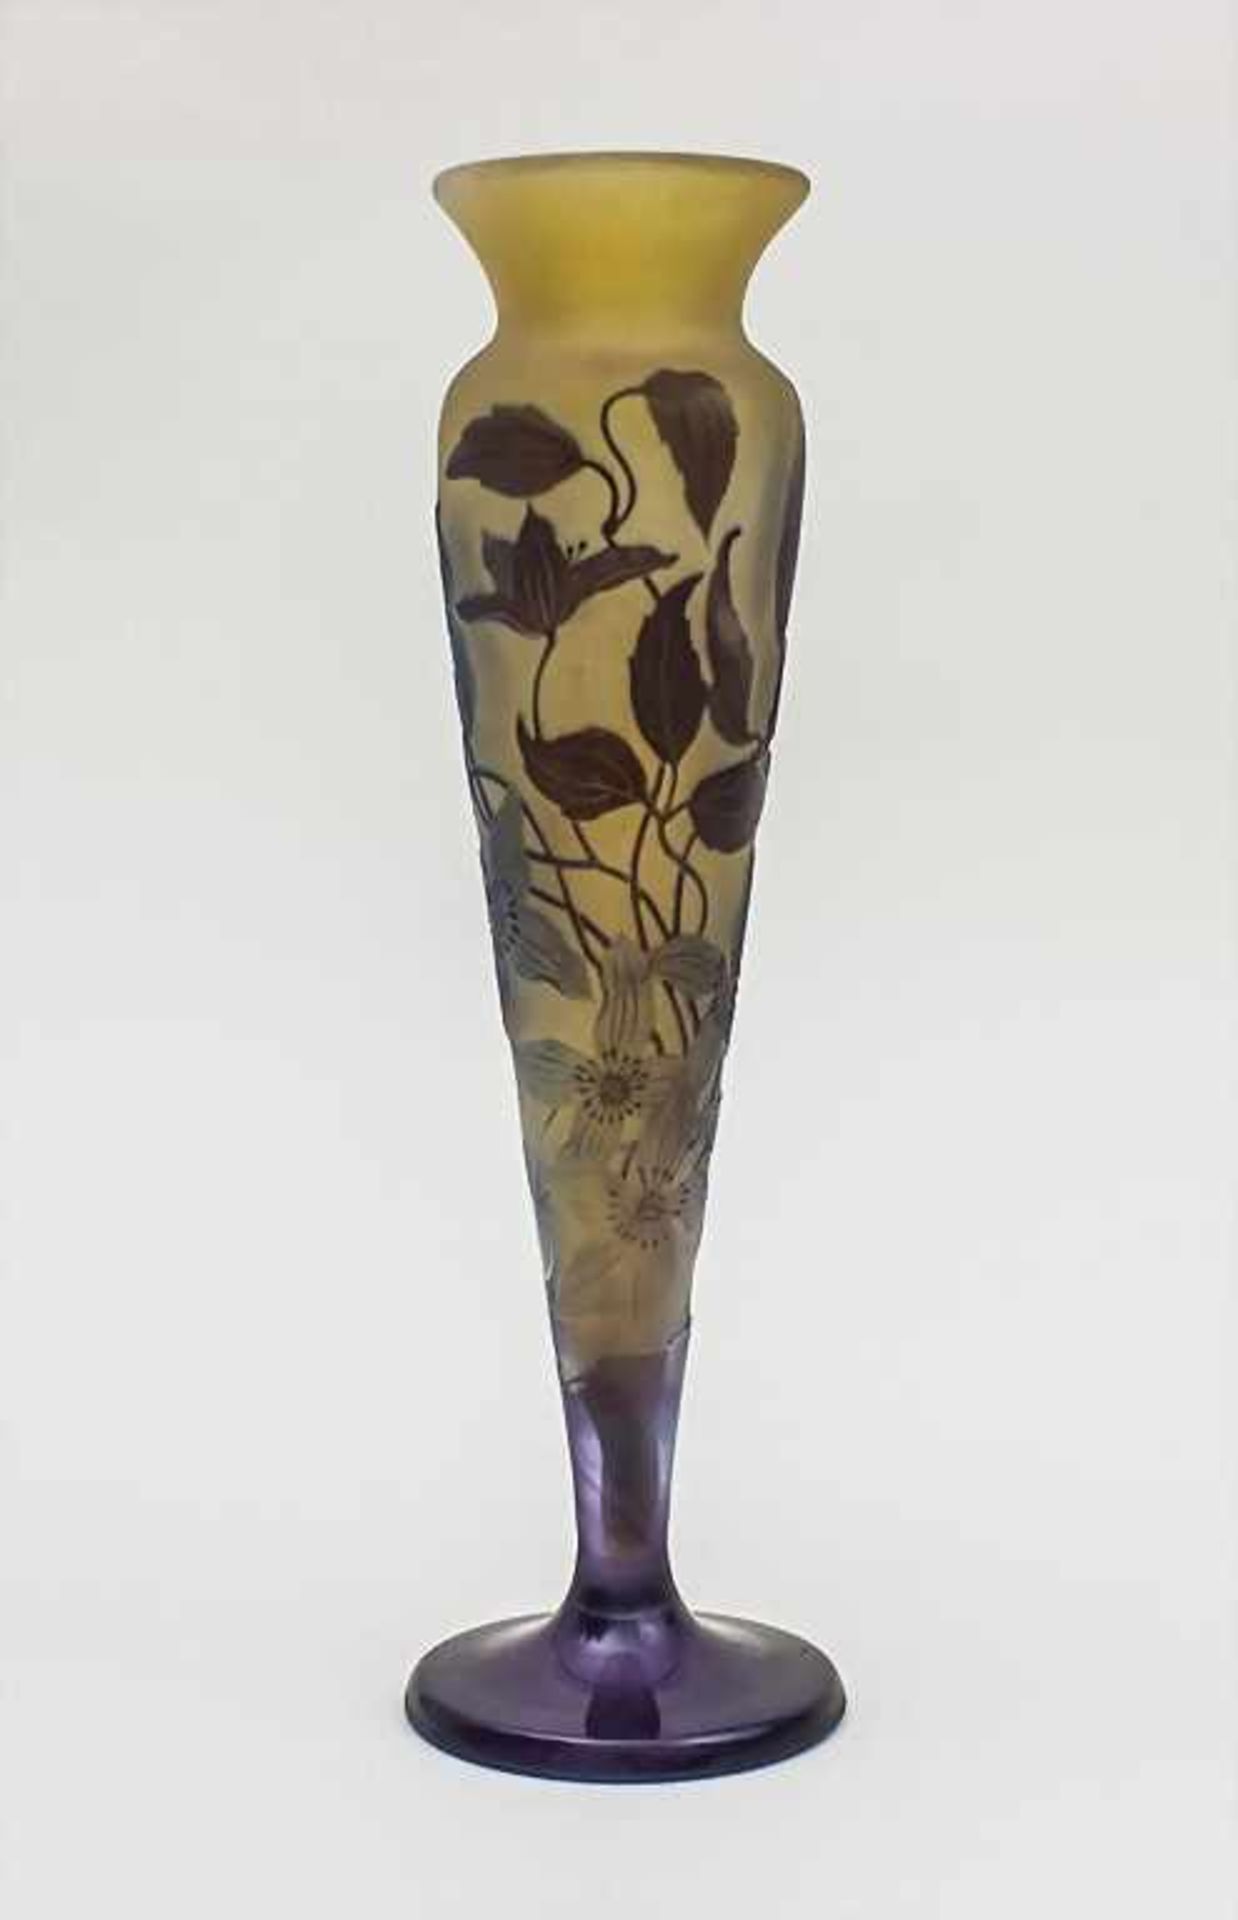 Jugendstil Vase / A Cameo Glass Vase, Emile Gallé, École de Nancy, um 1900farbloses Glas, innen gelb